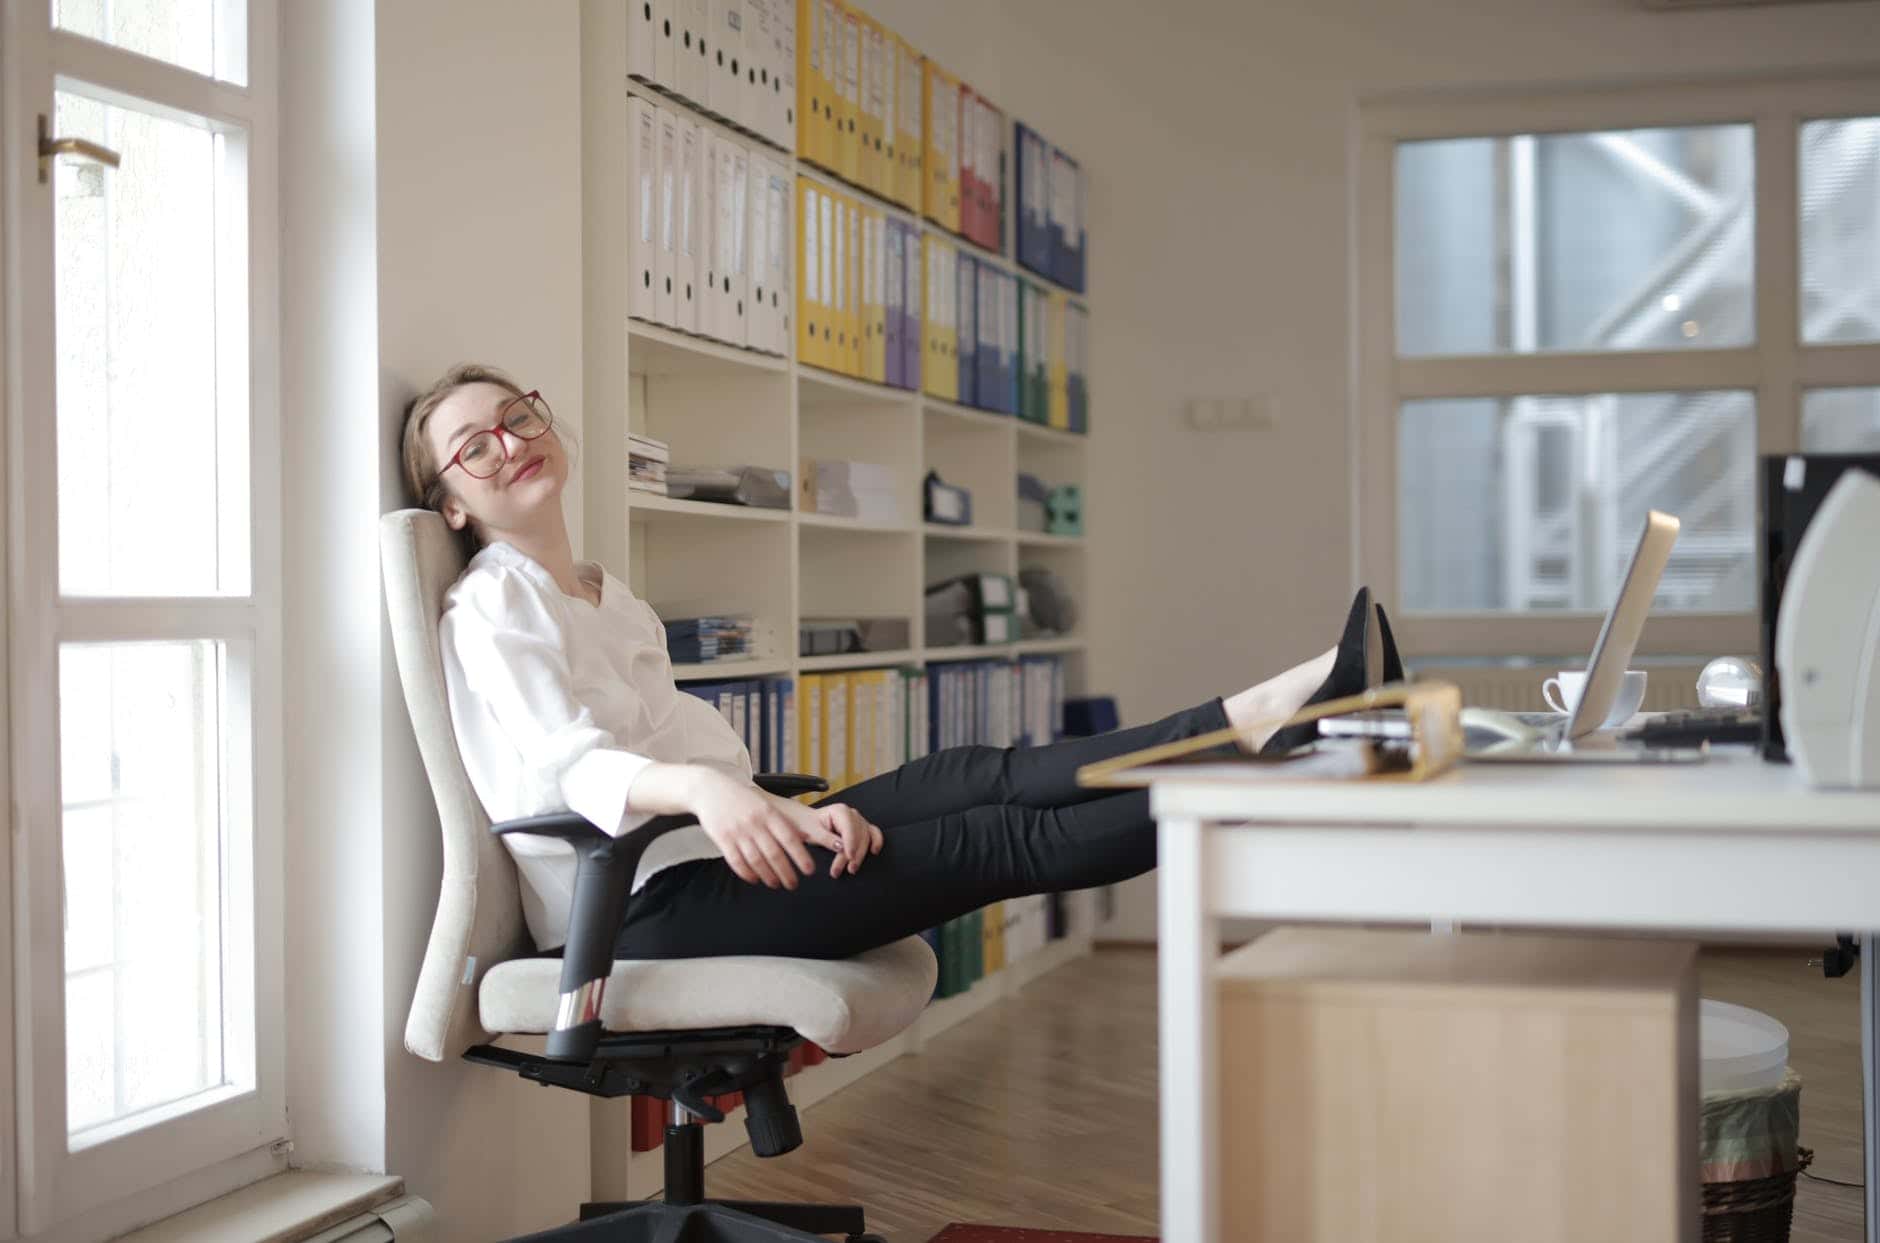 Příslušenství ke kancelářské židli, které ocení zaměstnanec i podlaha